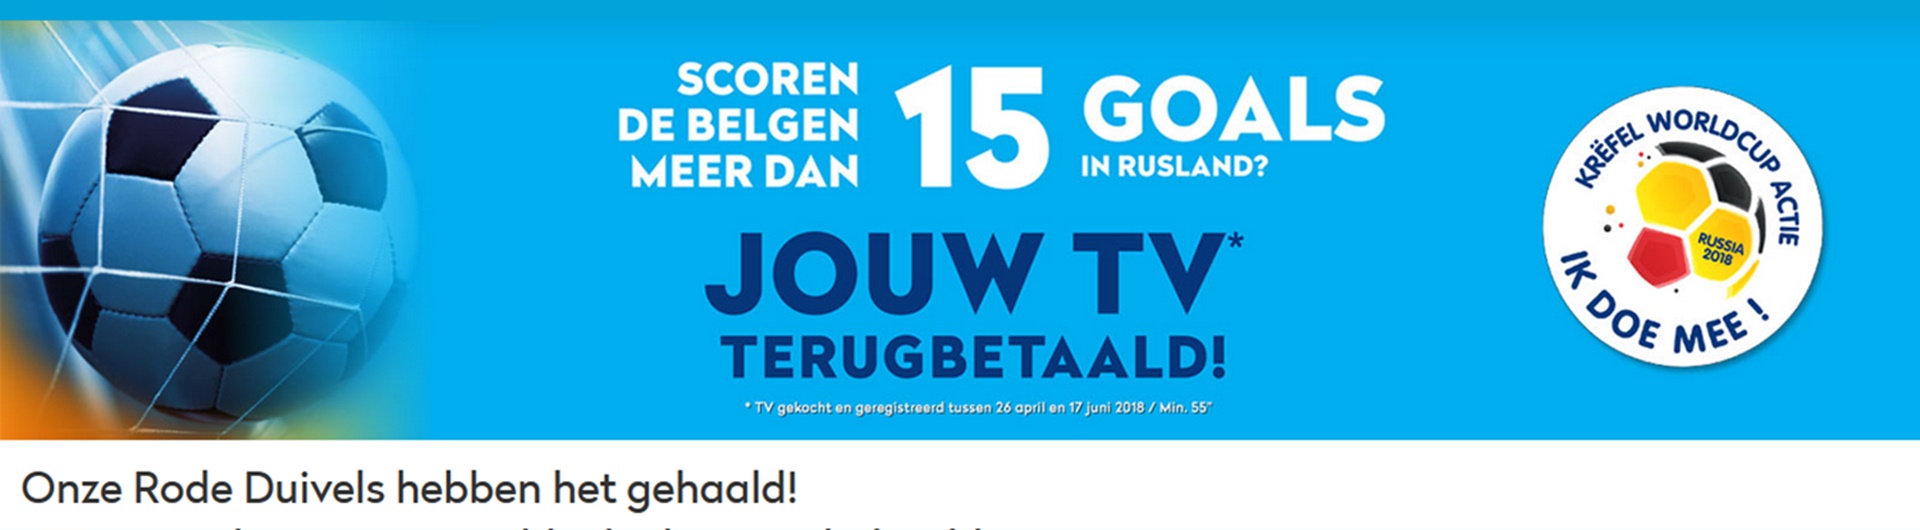 Mundialowa promocja: belgijski sklep zwróci klientom koszty zakupu telewizorów. Promocje cenowe bez obniżania ceny mają sens?